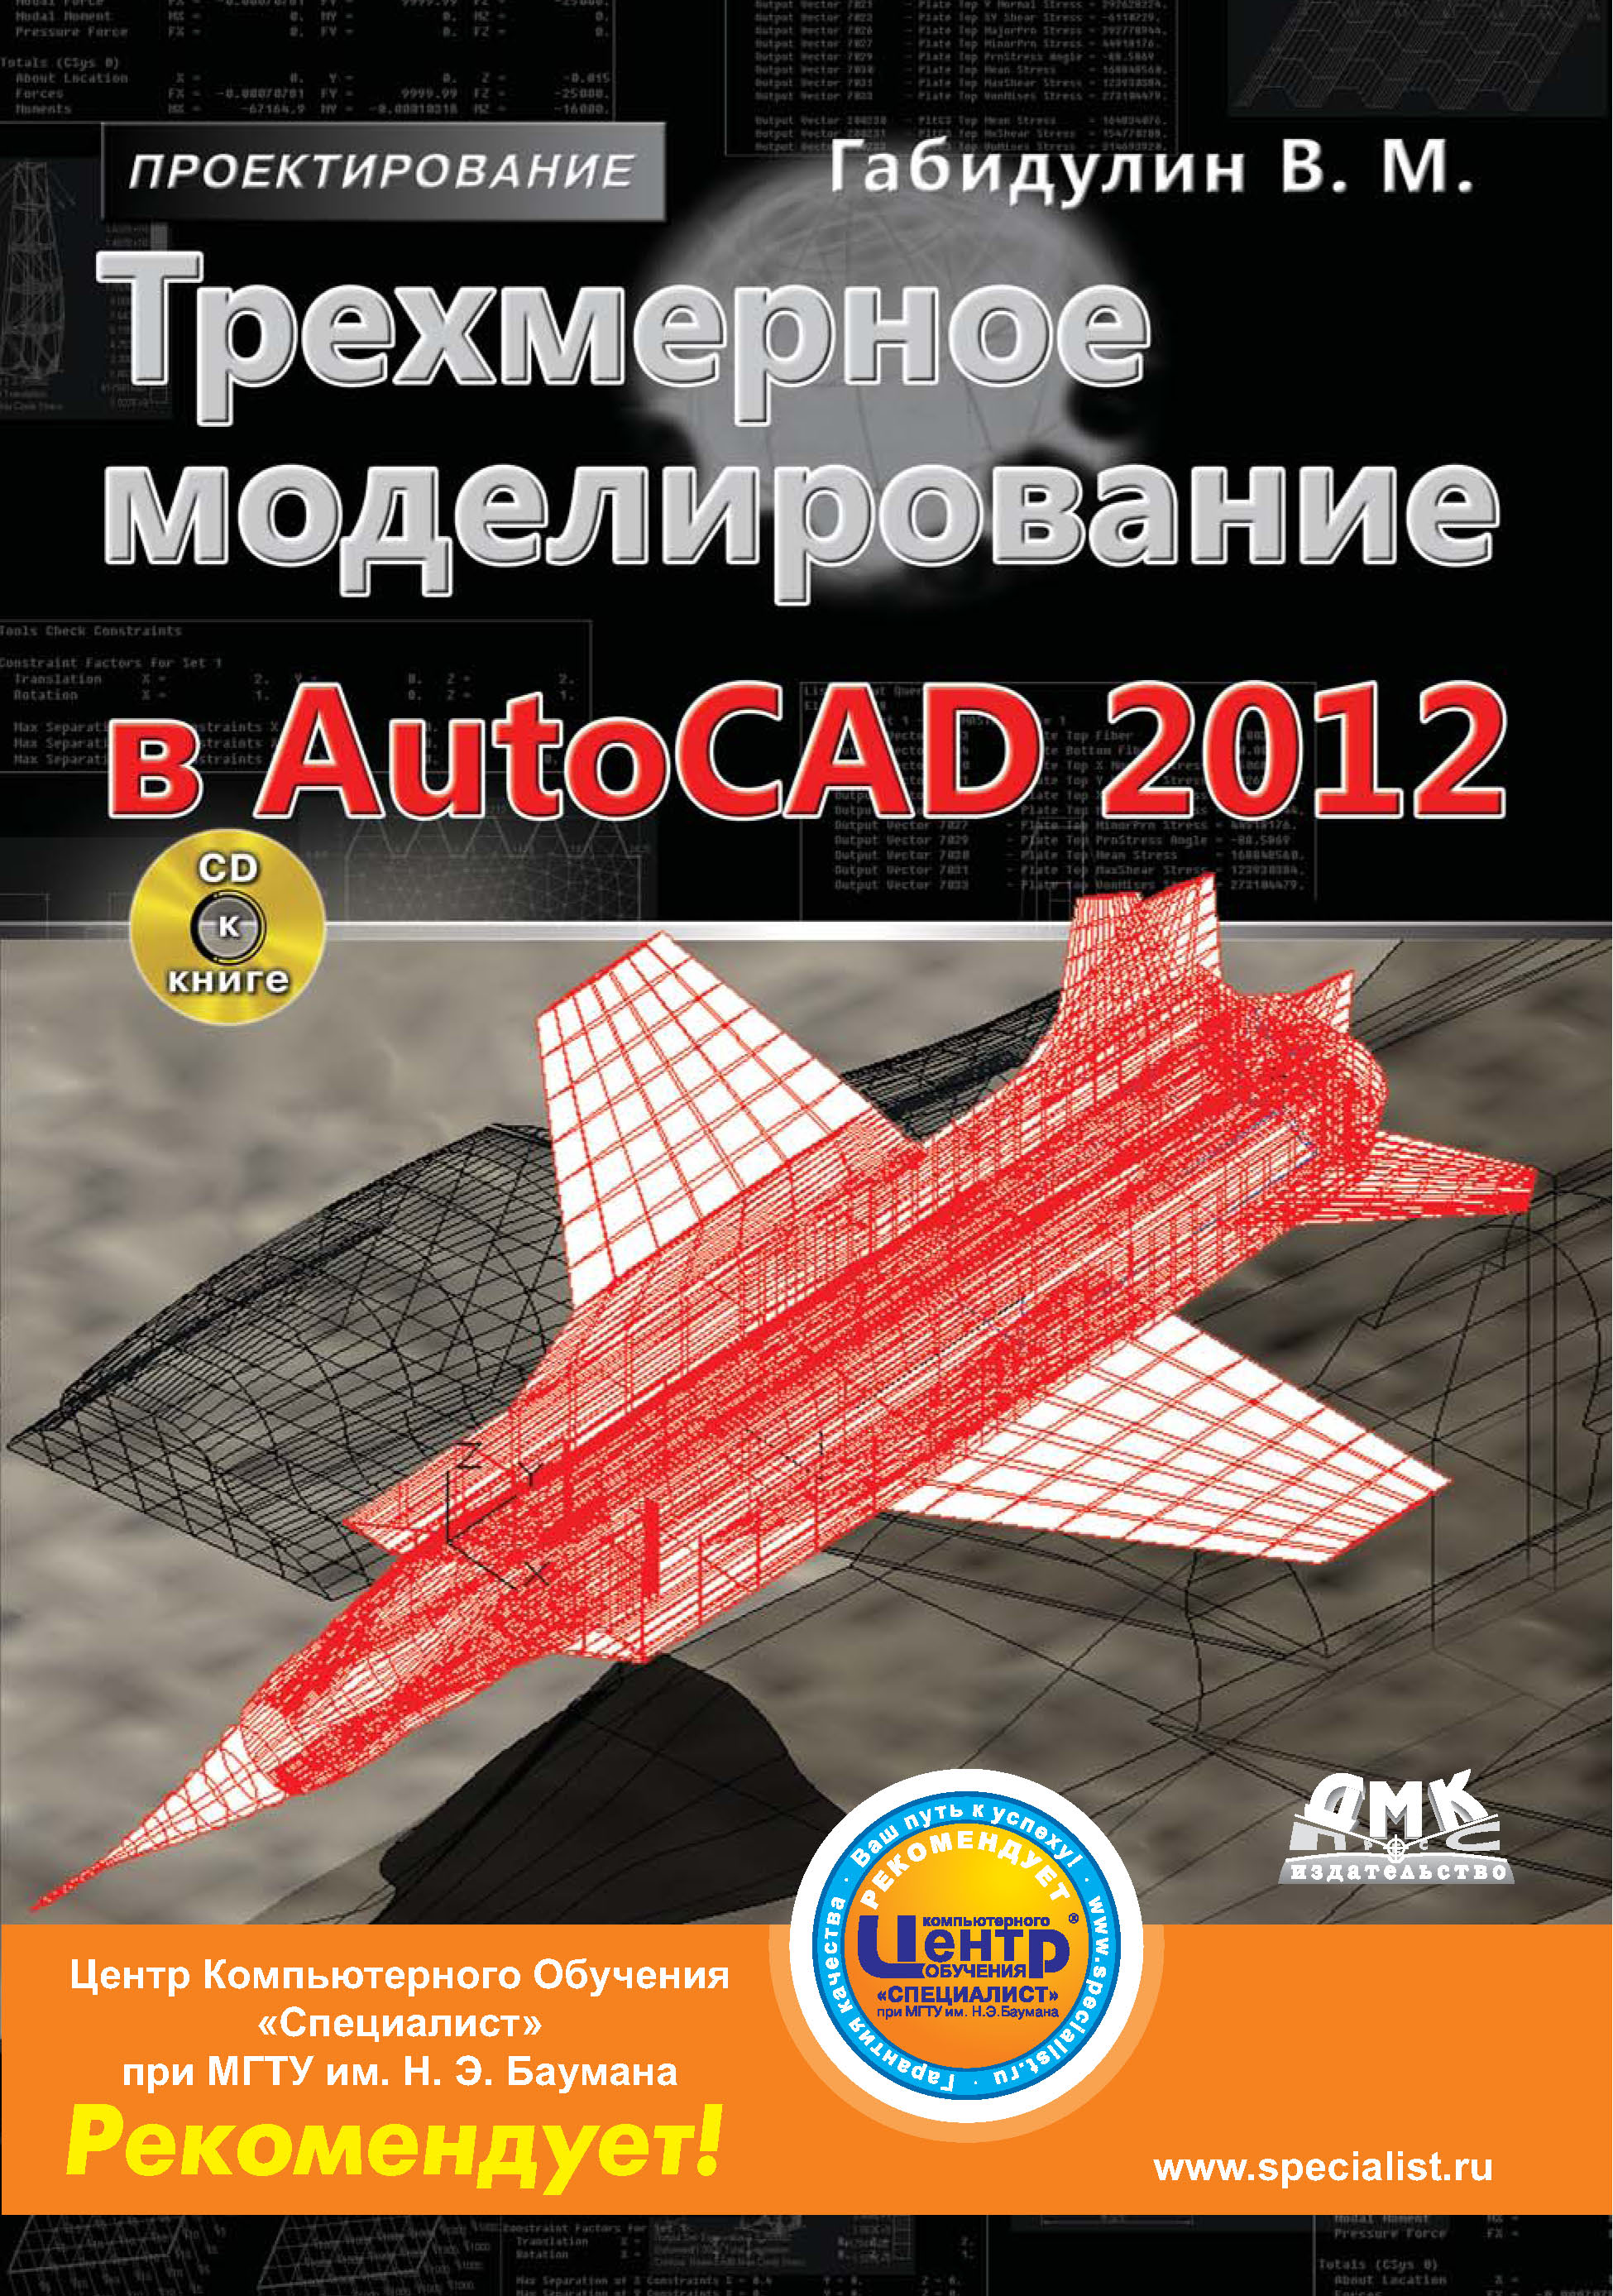 Книга Проектирование (ДМК Пресс) Трехмерное моделирование в AutoCAD 2012 созданная В. М. Габидулин может относится к жанру программы, проектирование. Стоимость электронной книги Трехмерное моделирование в AutoCAD 2012 с идентификатором 22075418 составляет 239.00 руб.